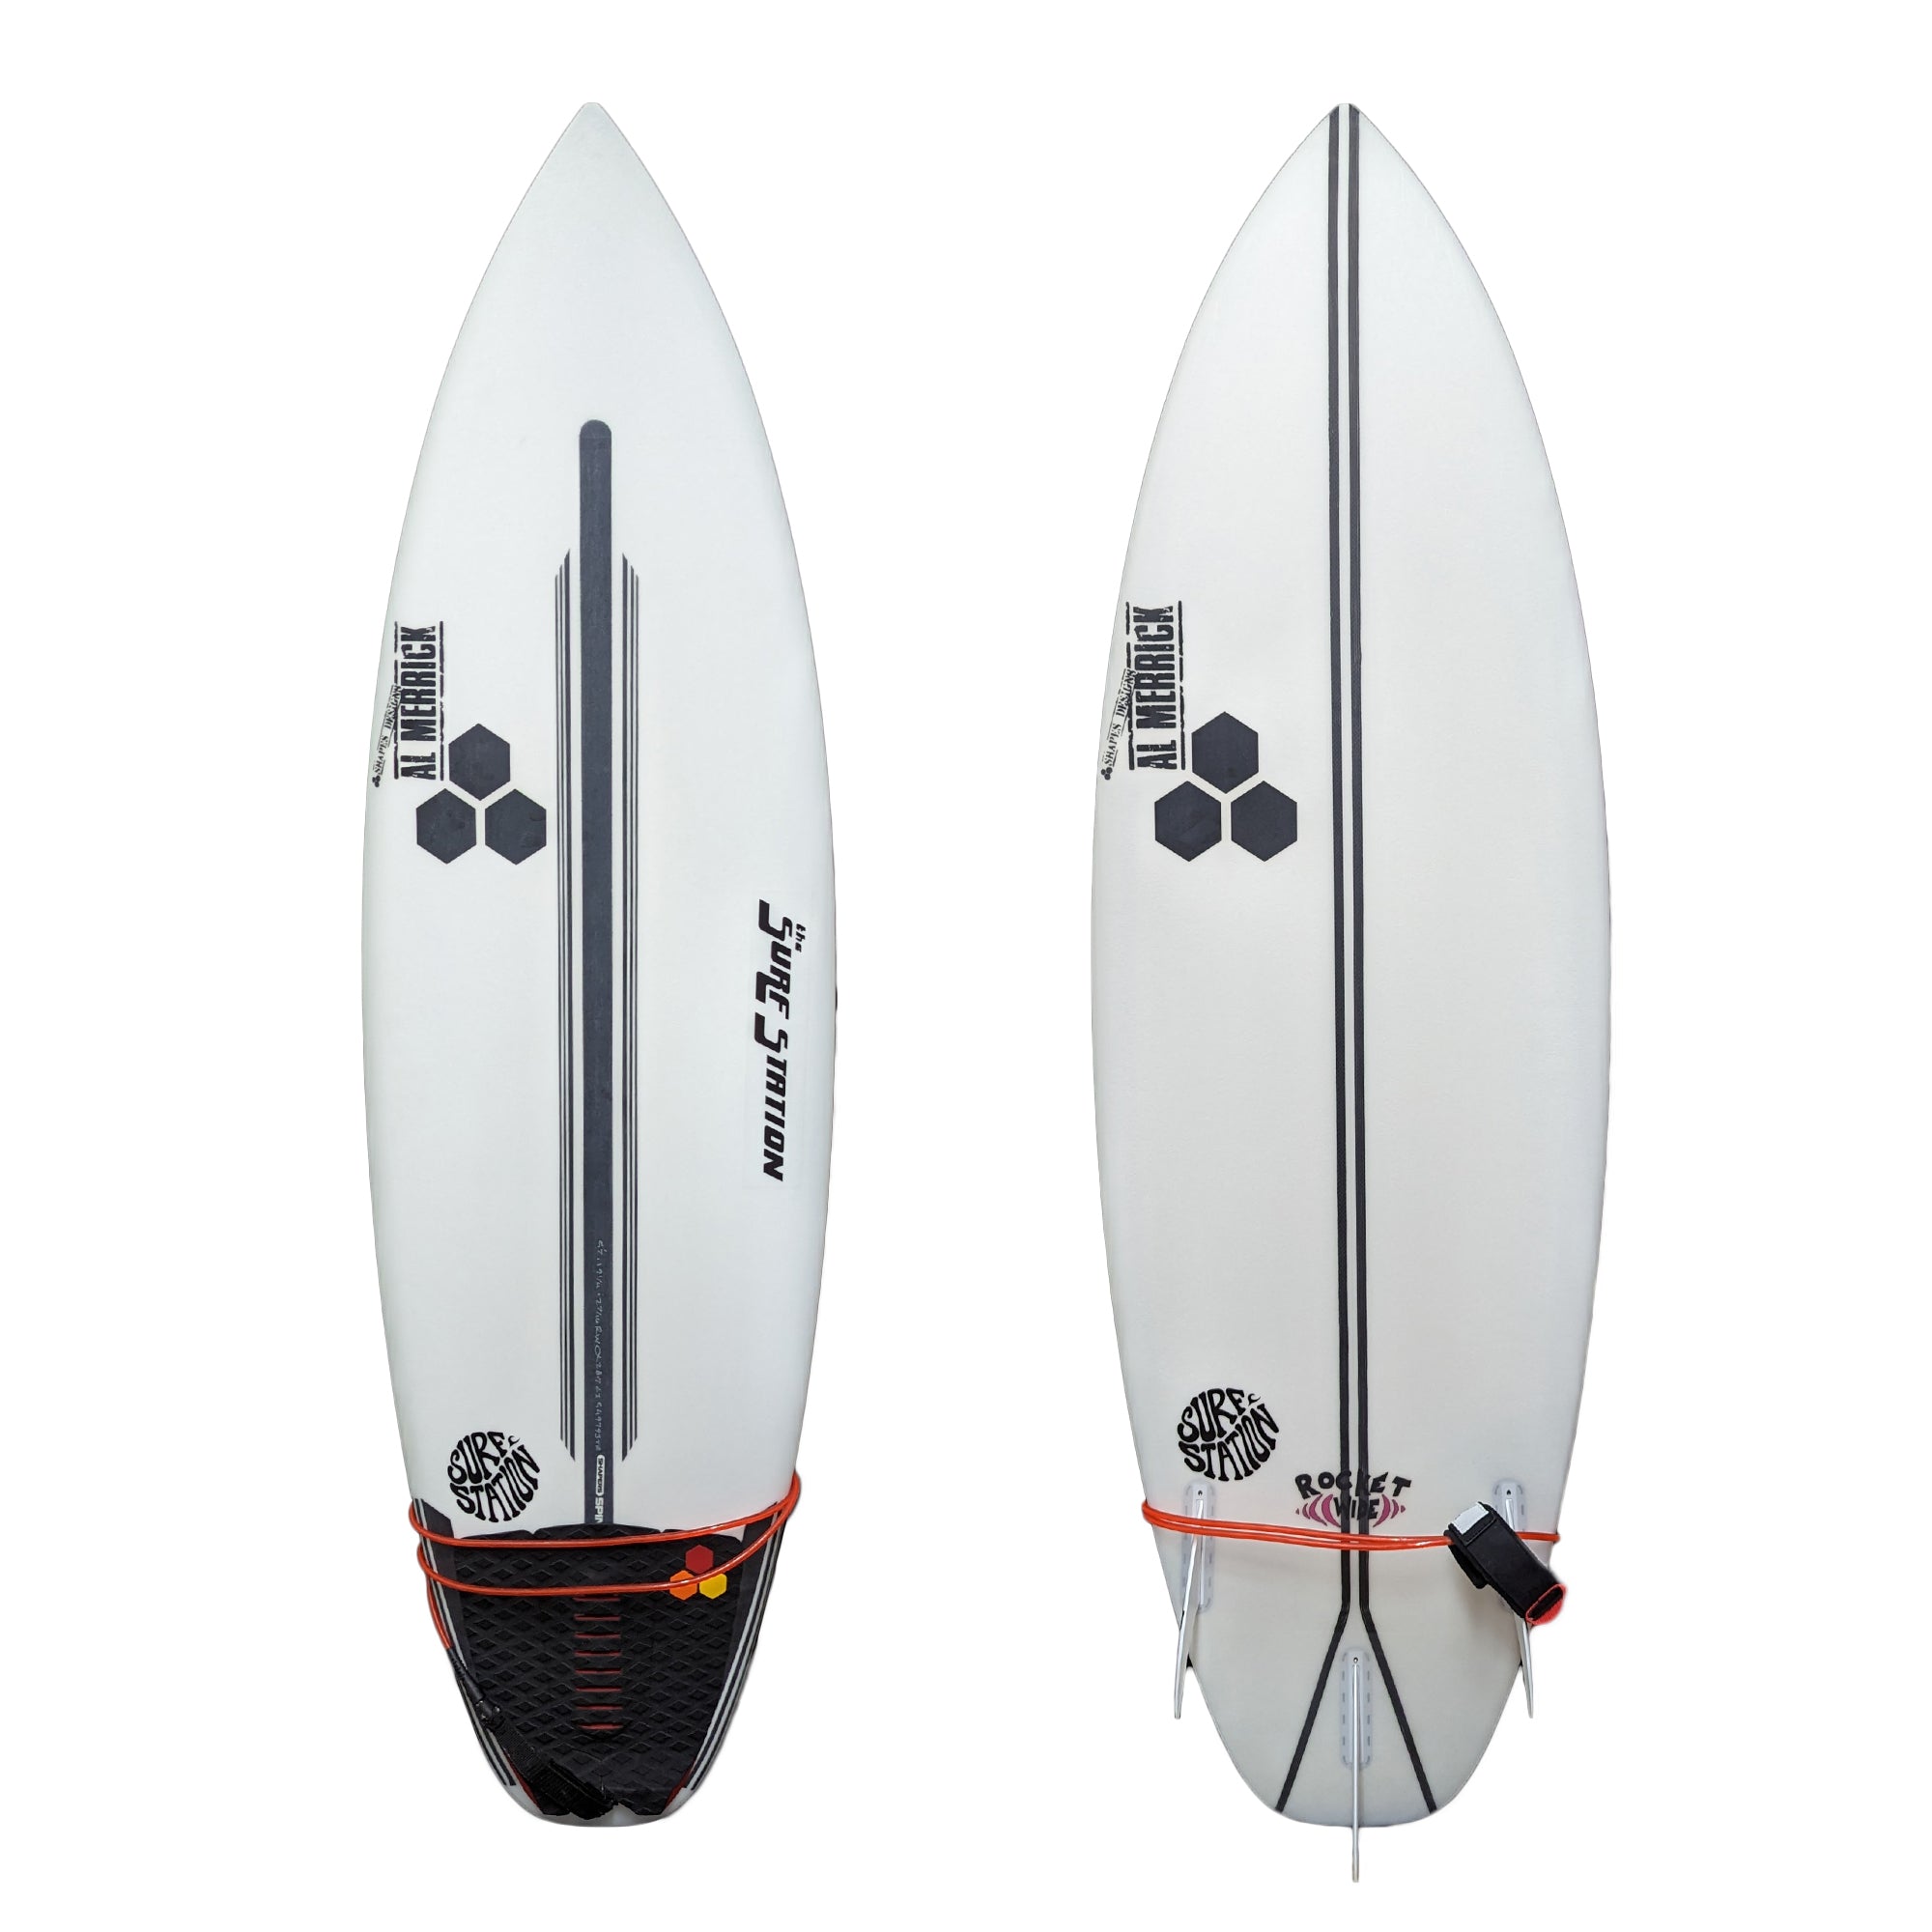 Channel Islands Rocket Wide Squash Spine-Tek Demo Surfboard